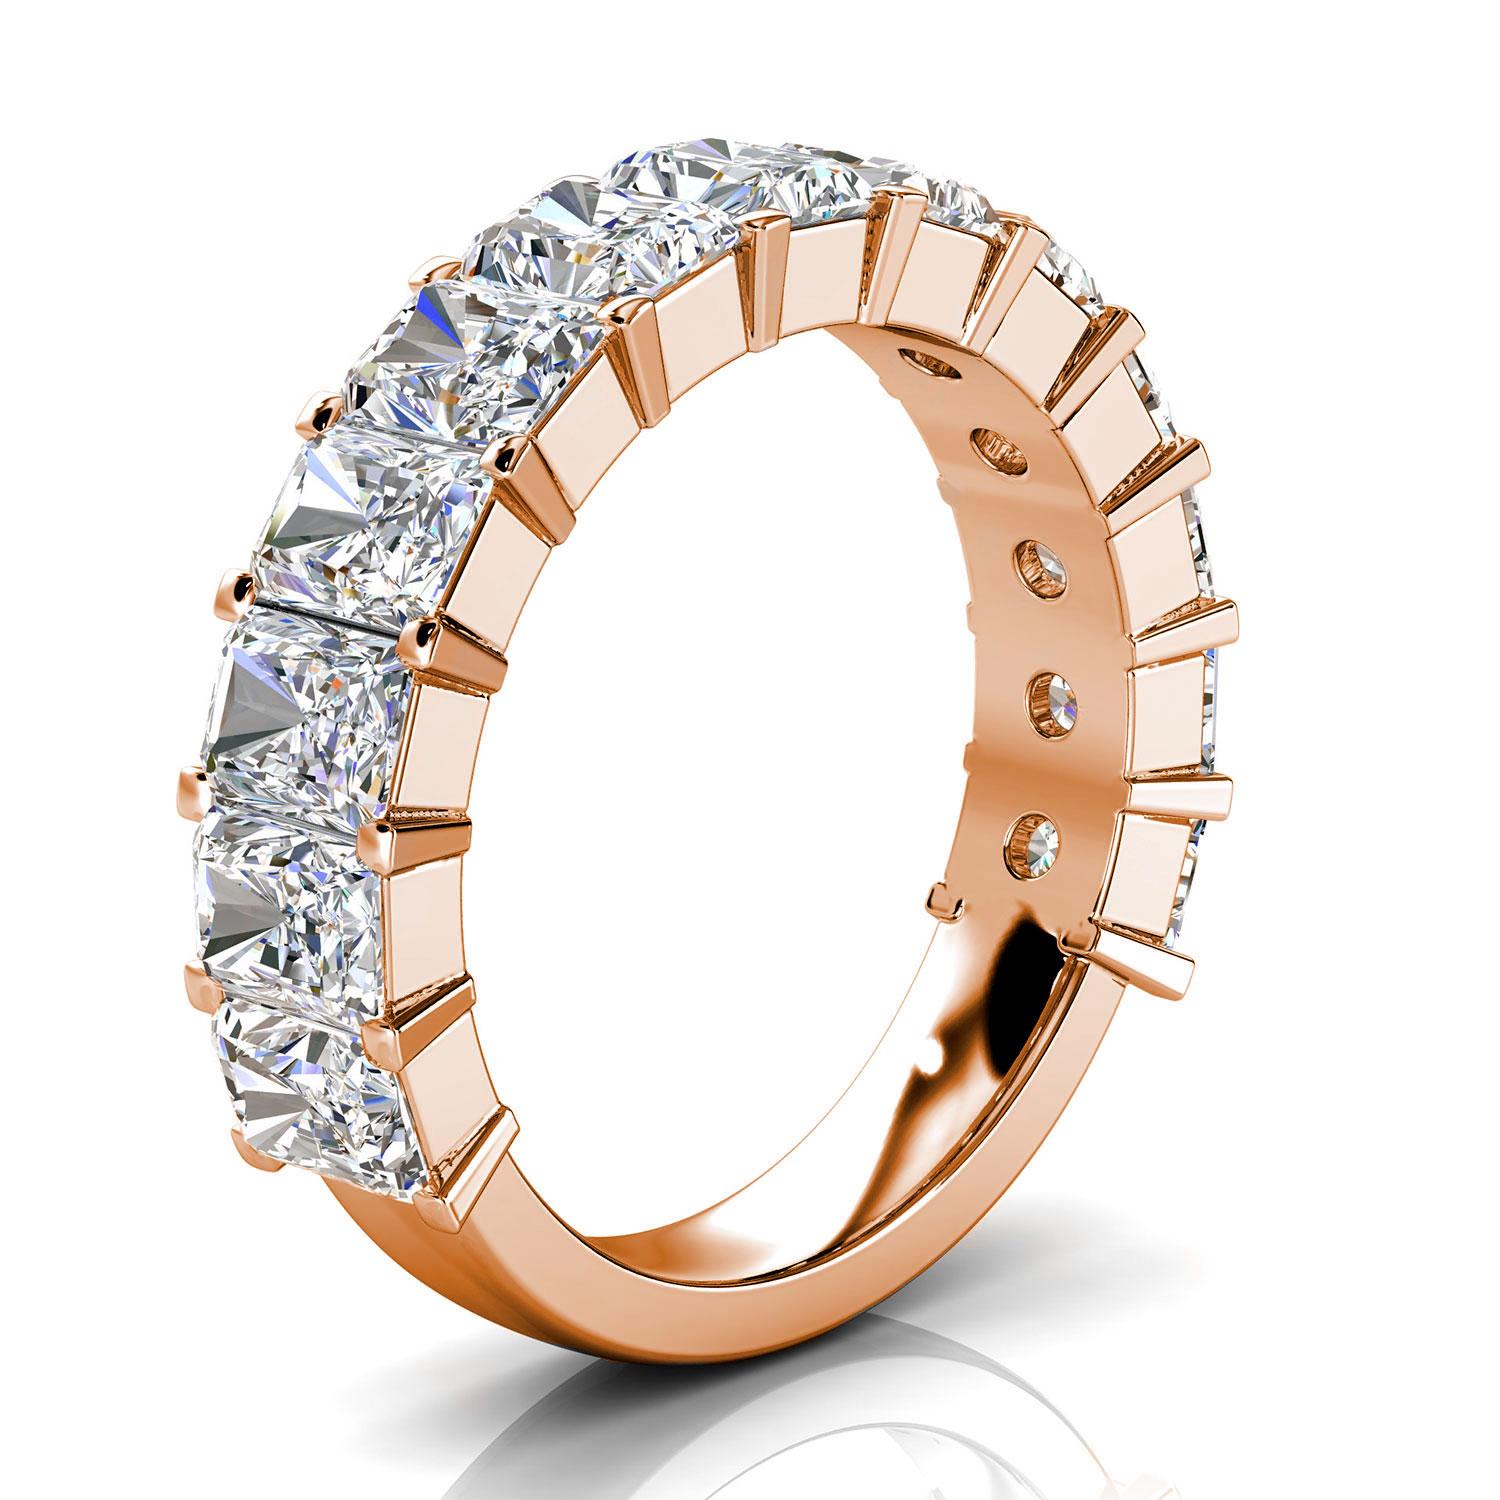 Diese Royalty Ring verfügt über dreizehn (13) Radiant Shape Diamanten Prong- Set etwa 1/2 ein Karat jeder auf 3/4 eines 3,6 mm Schaft. Es ist ein Gesprächsstoff! Erleben Sie den Unterschied persönlich!

Einzelheiten zum Produkt: 

Zentrum Edelstein